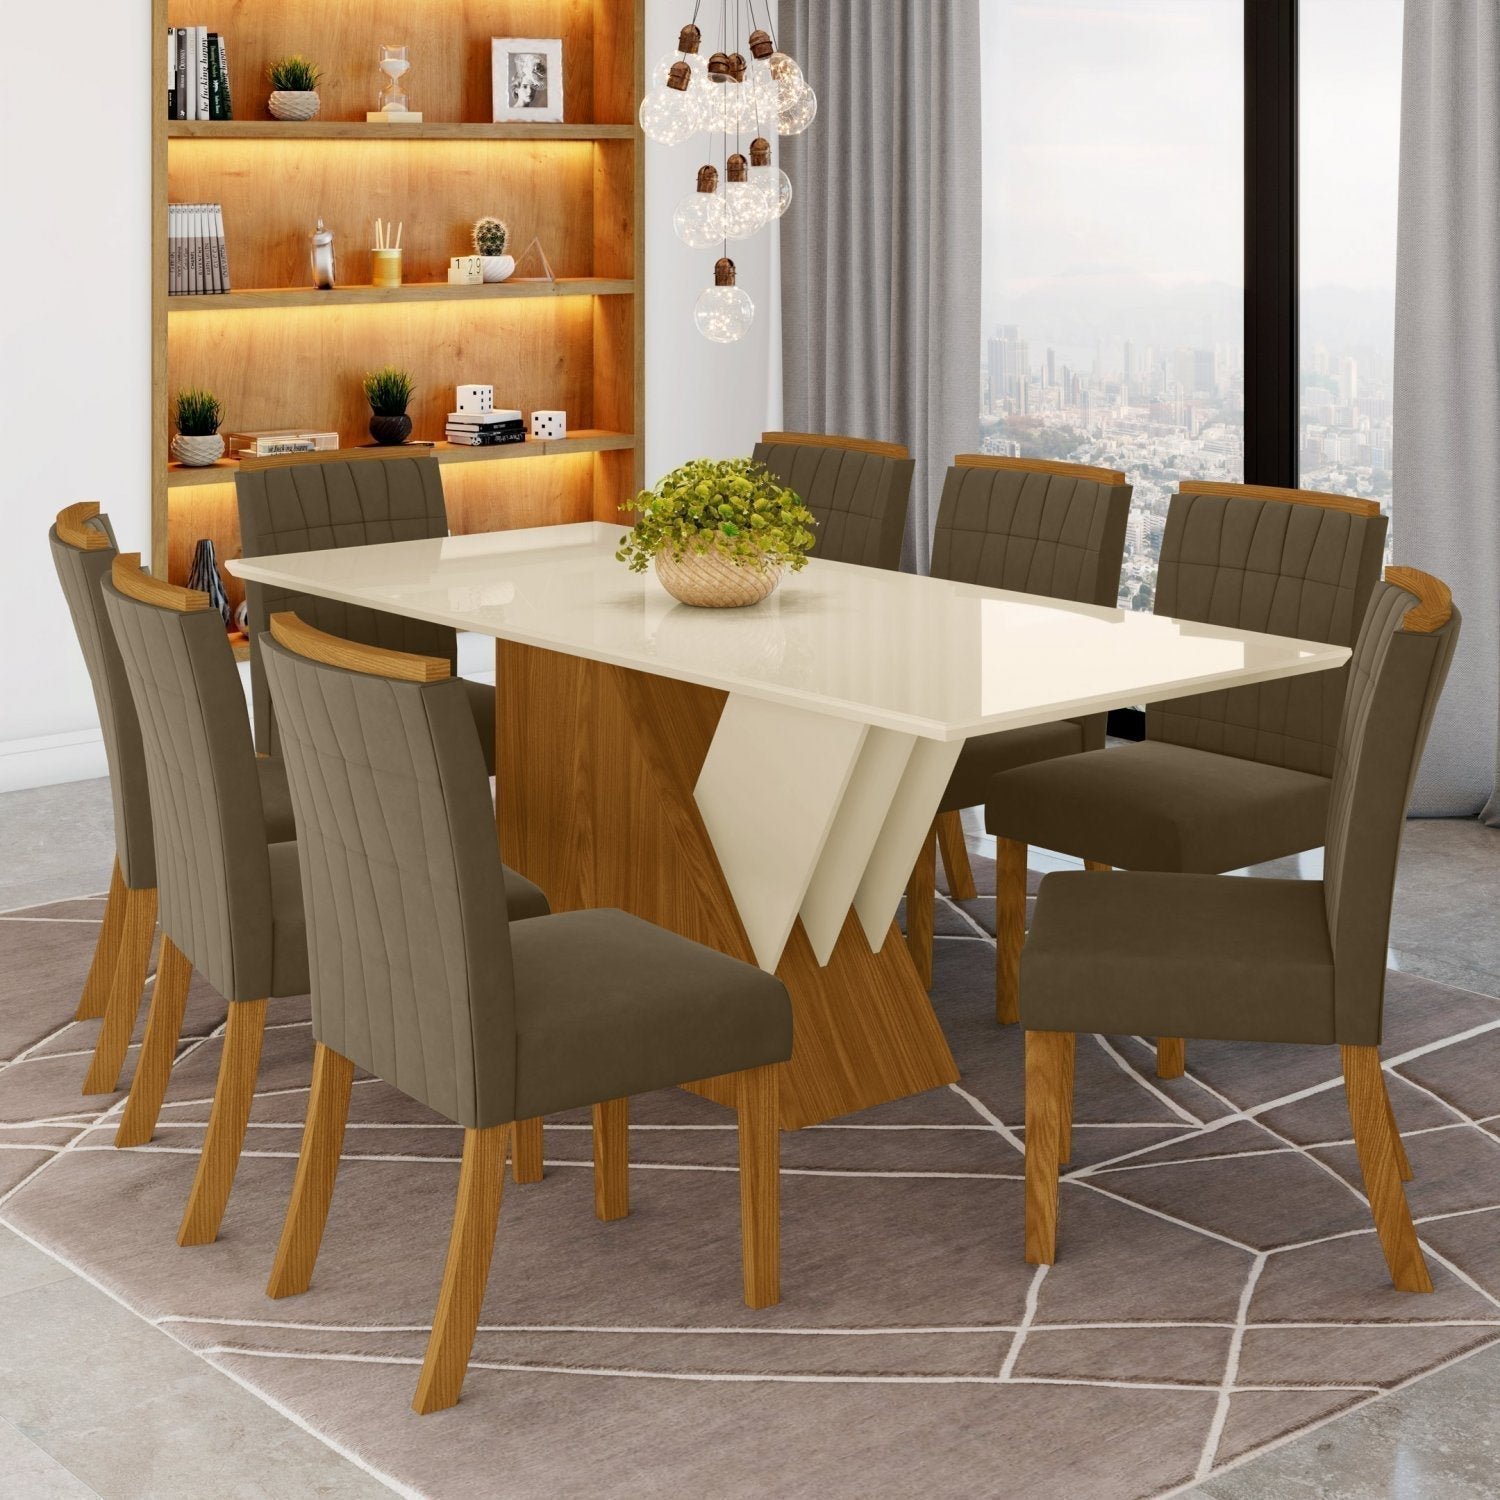 Conjunto Sala de Jantar Mesa Tampo MDF e Vidro 8 Cadeiras Itália Espresso Móveis